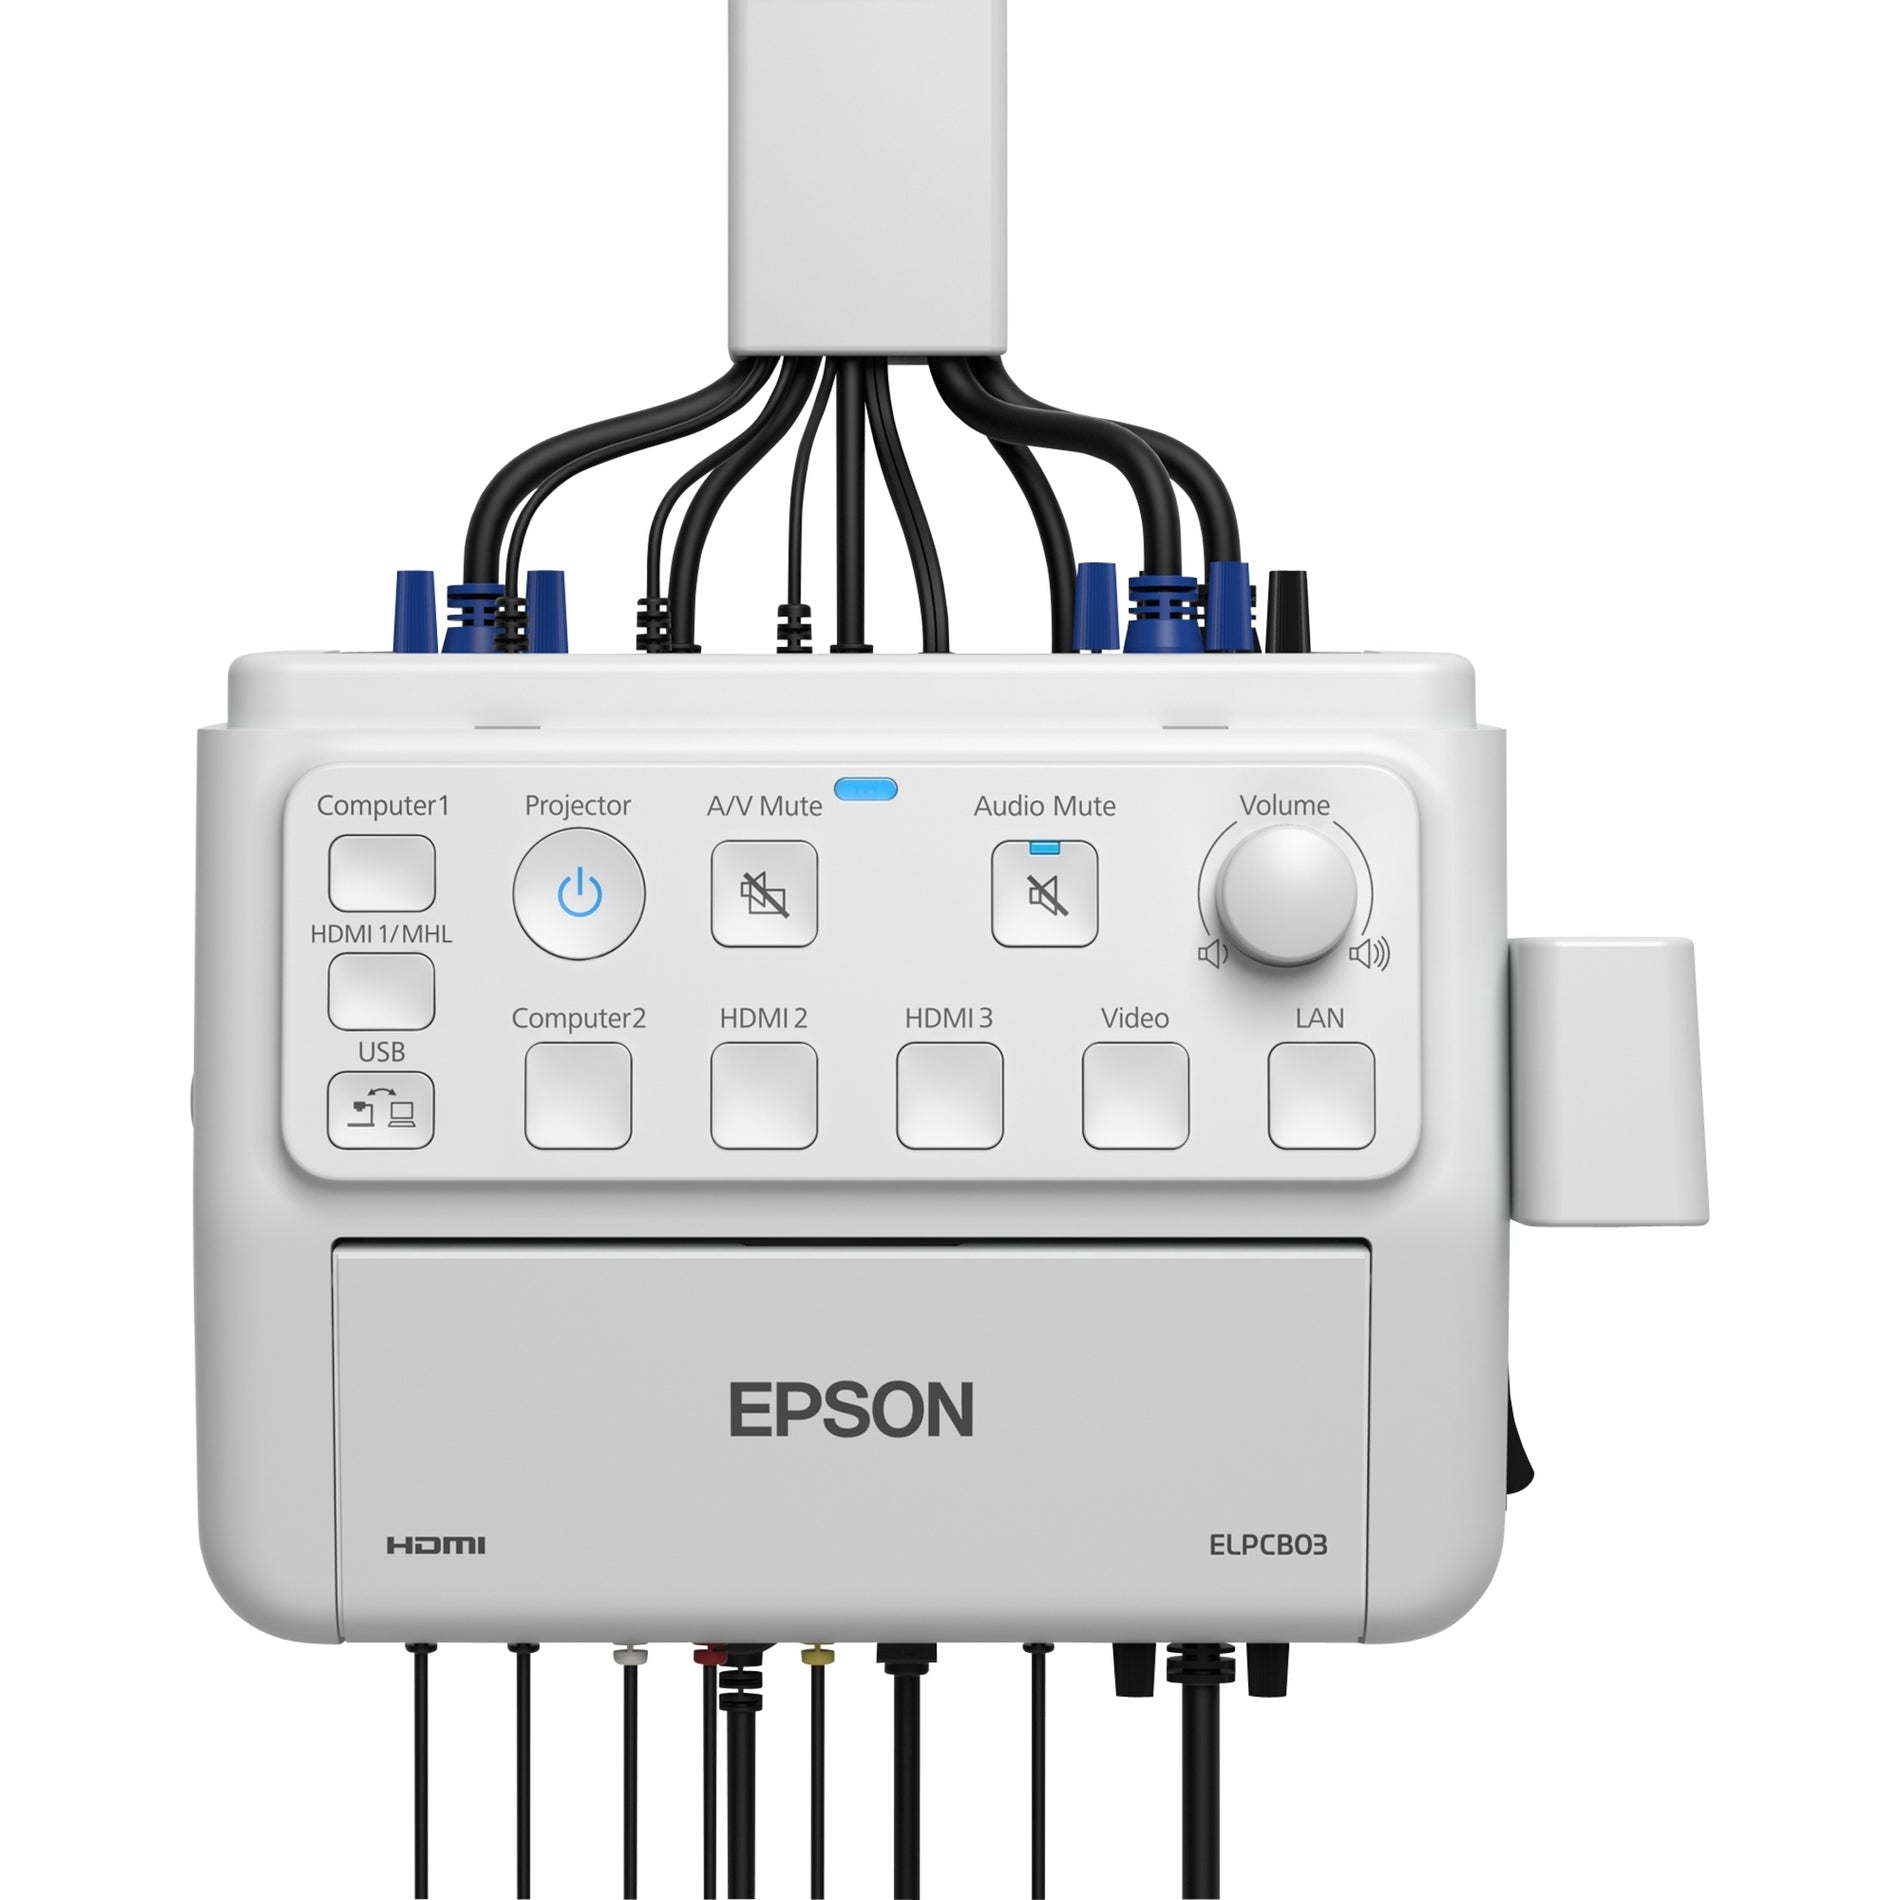 爱普生 (Epson) V12H927020 PowerLite Pilot 3 连接和控制盒，简单的投影仪管理和控制